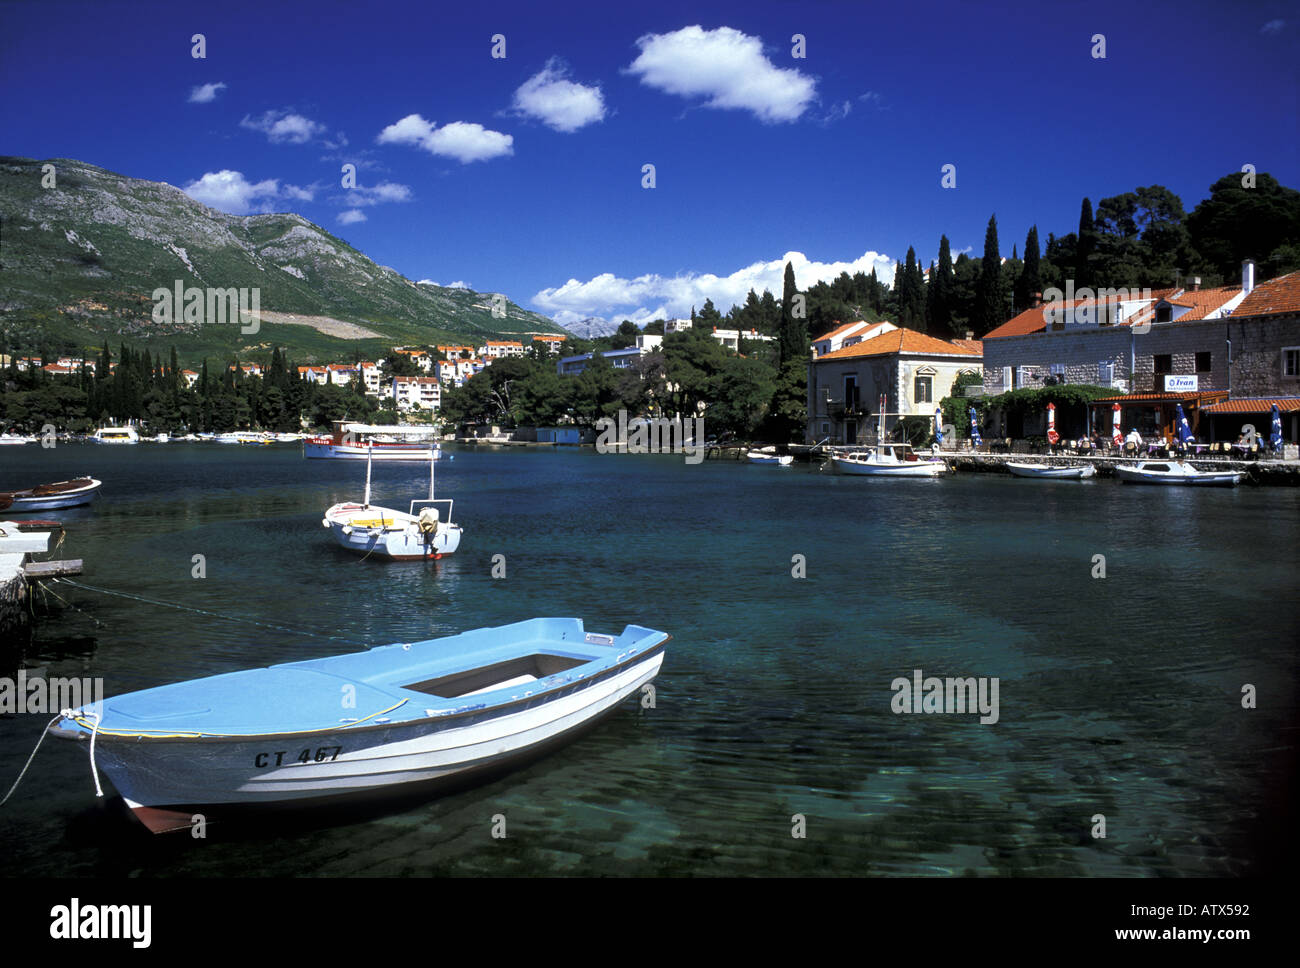 Bateaux dans le port La ville medieaval près de Dubrovnik Cavtat Croatie Sud entouré par la mer Adriatique Banque D'Images